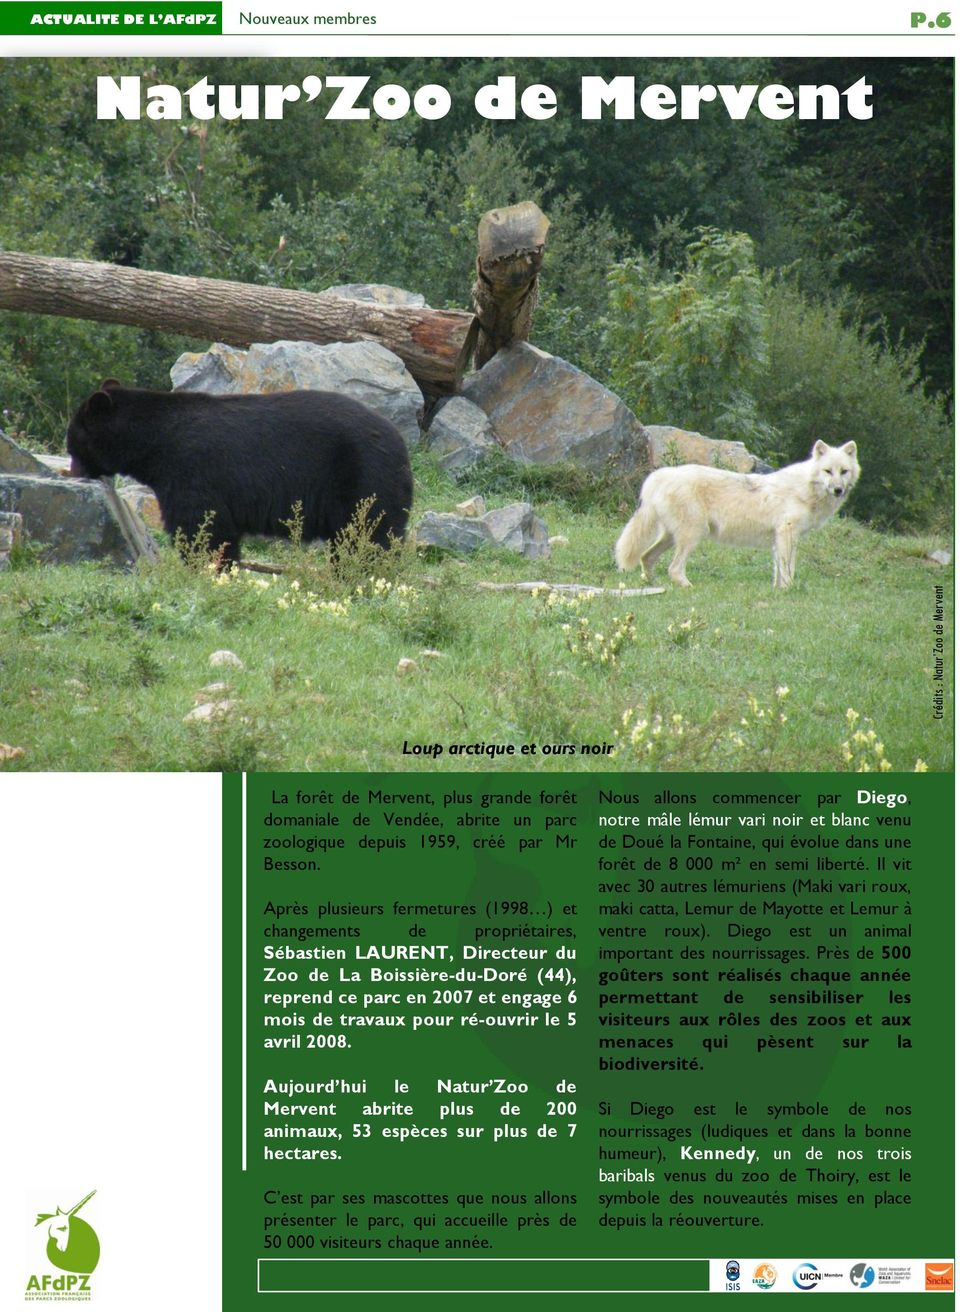 Après plusieurs fermetures (1998 ) et changements de propriétaires, Sébastien LAURENT, Directeur du Zoo de La Boissière-du-Doré (44), reprend ce parc en 2007 et engage 6 mois de travaux pour